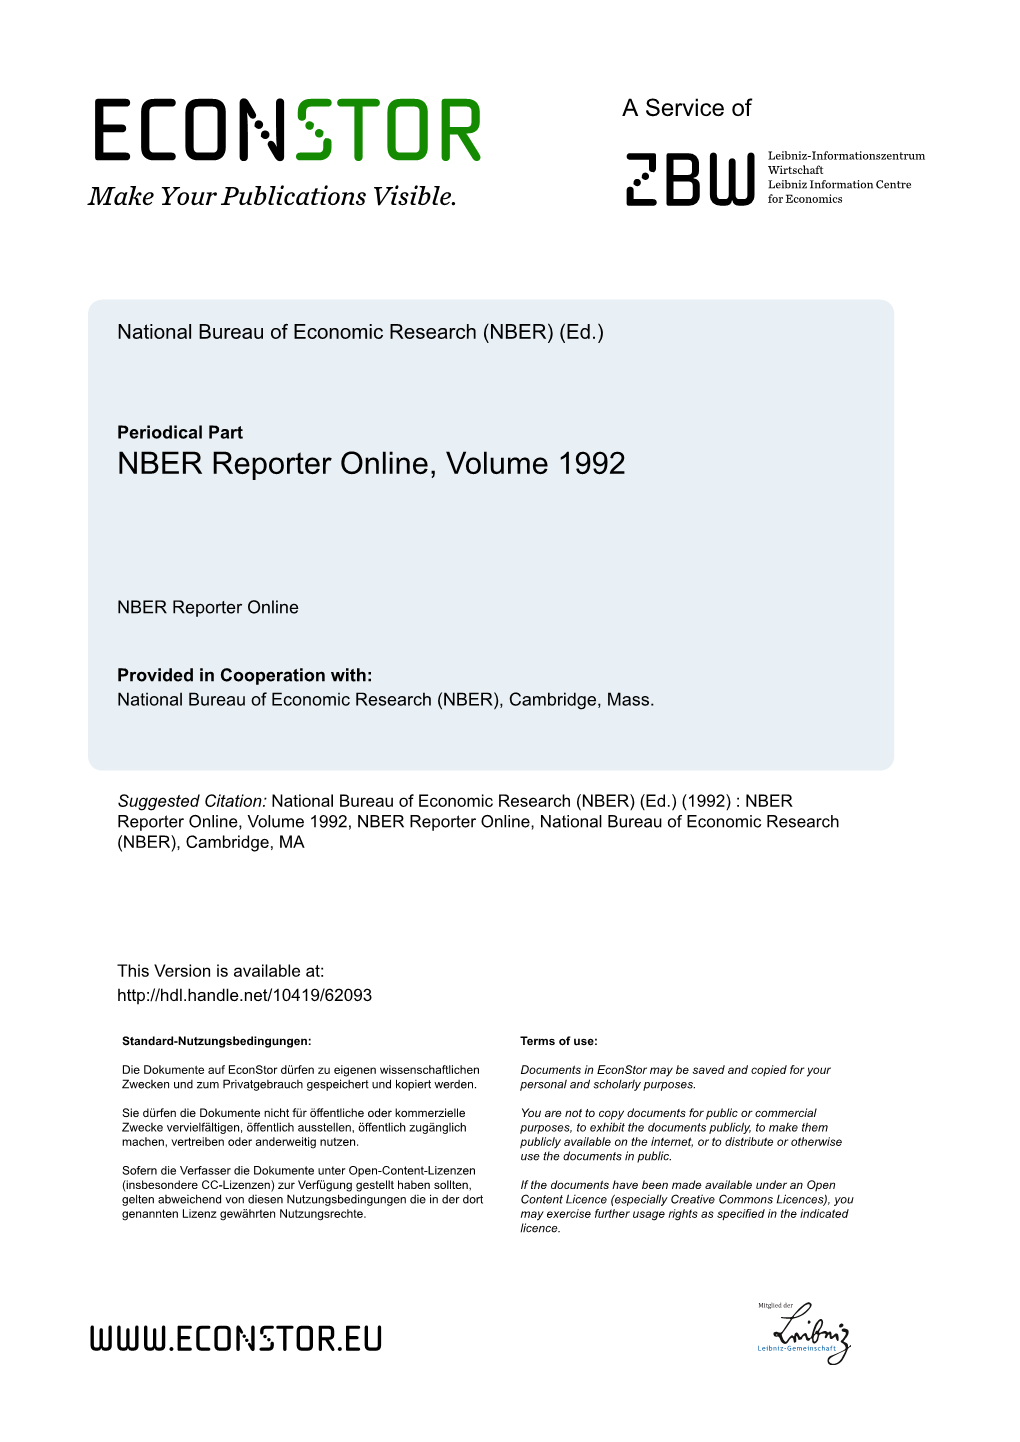 NBER Reporter Online, Volume 1992